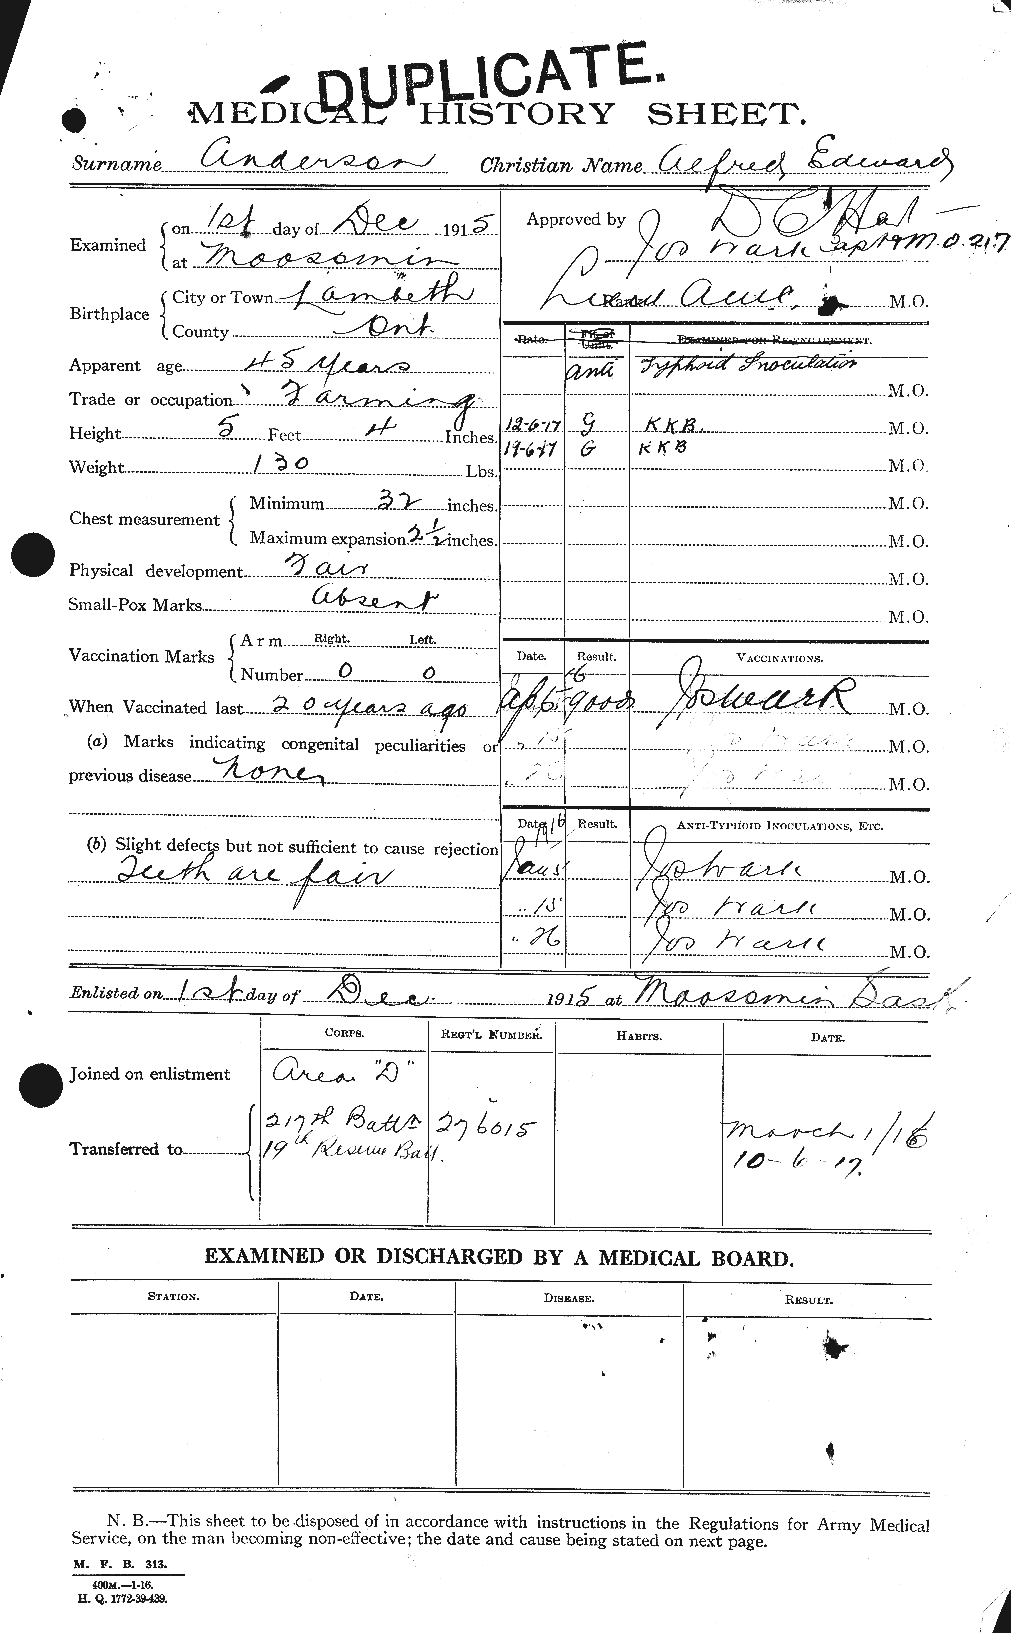 Dossiers du Personnel de la Première Guerre mondiale - CEC 209456a